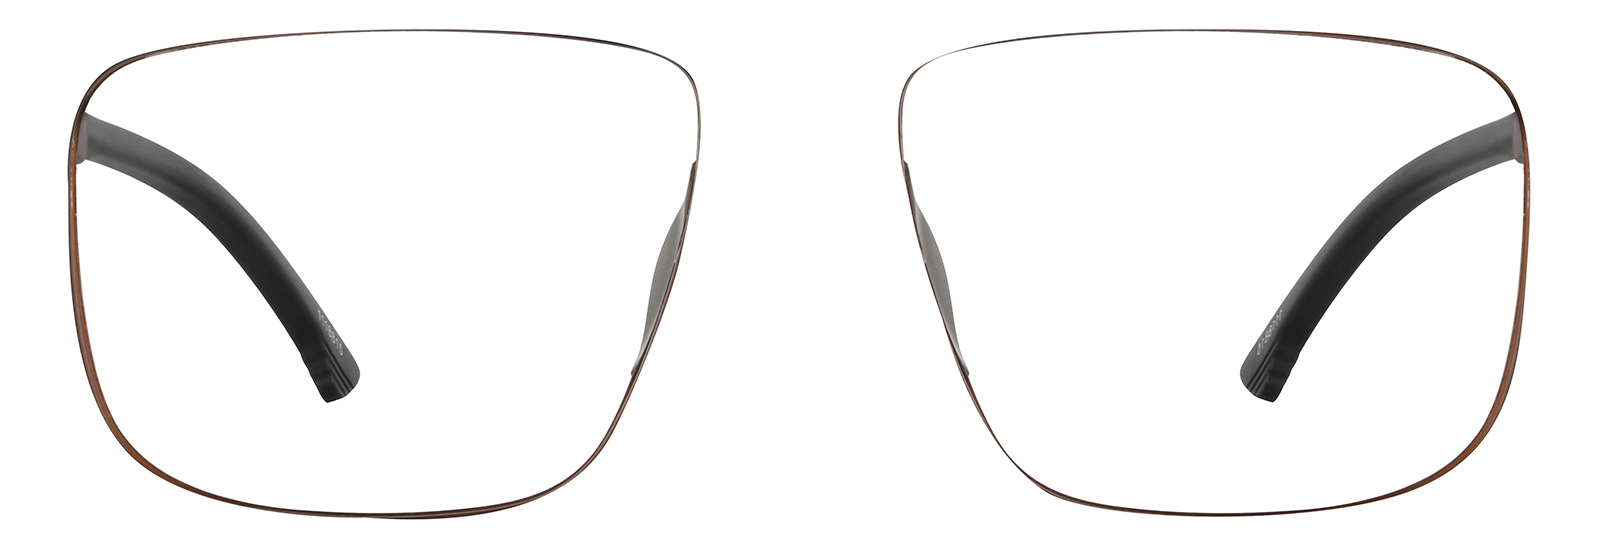 Premium Rectangle Sunglasseslens arm image